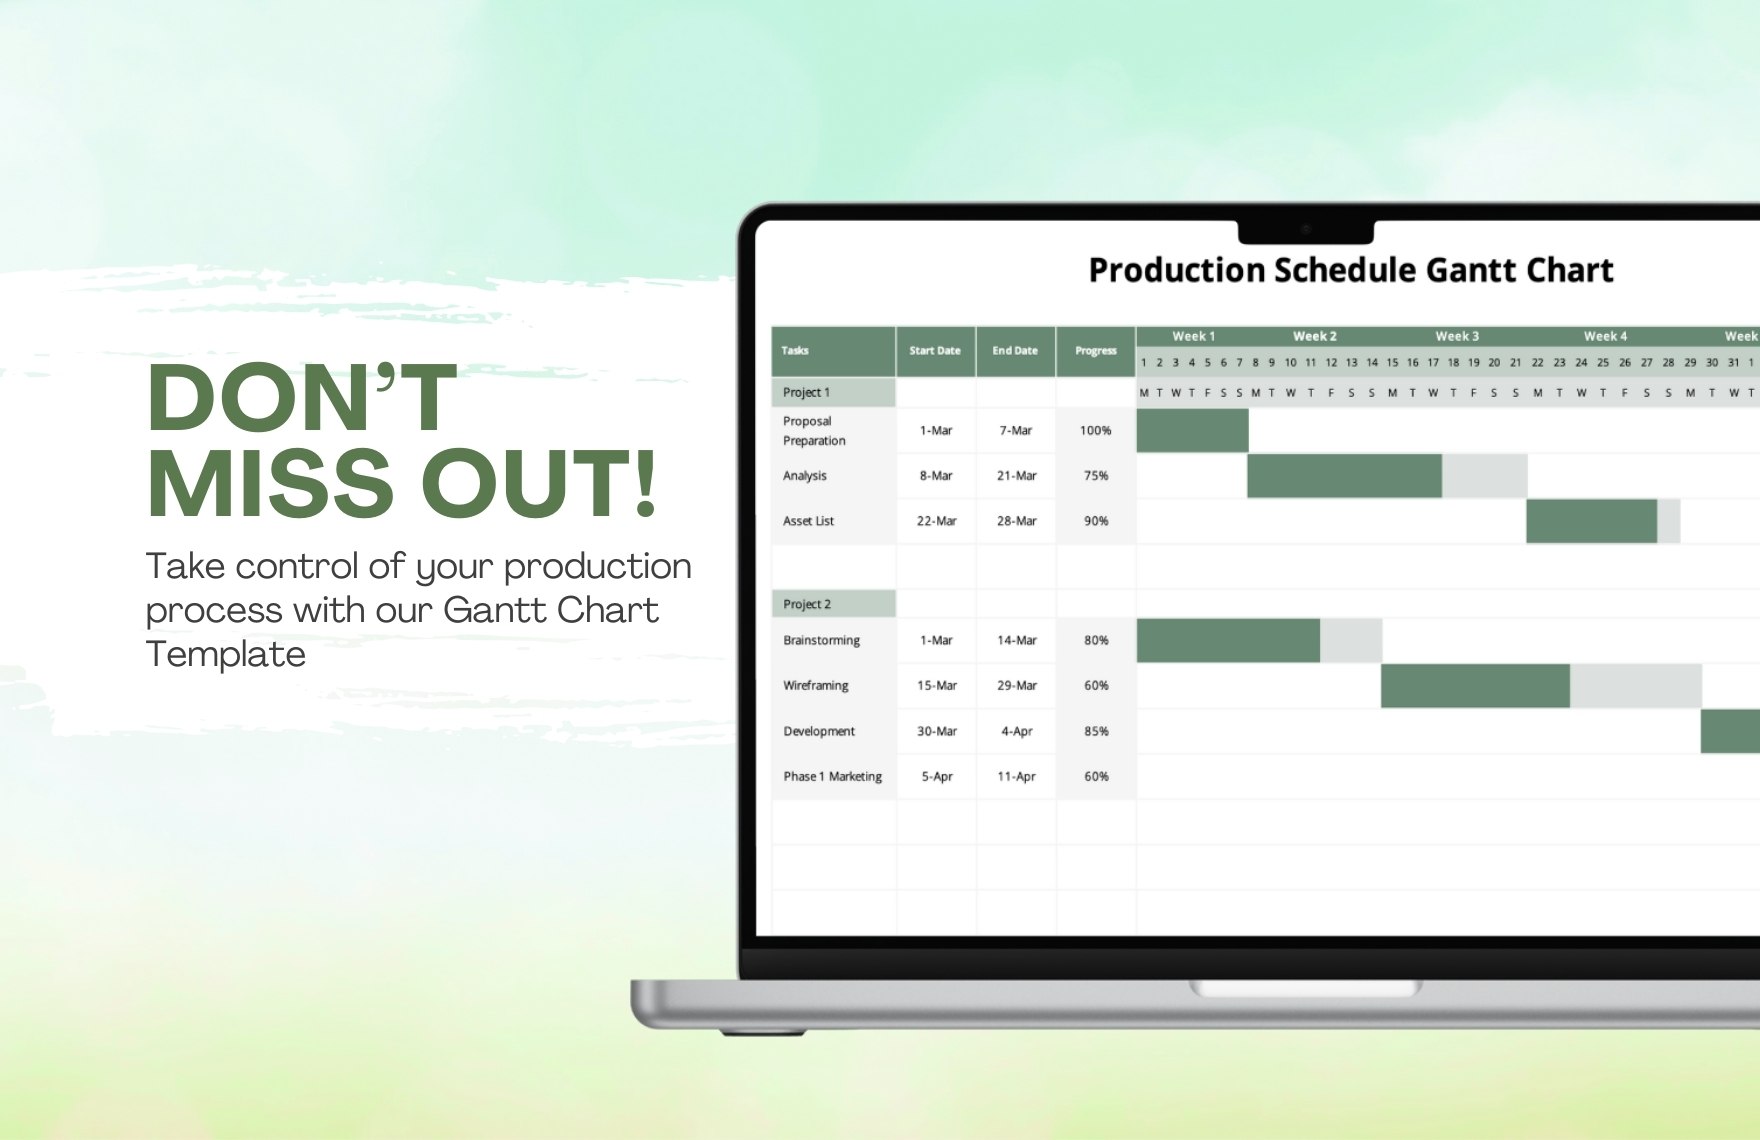 Production Schedule Gantt Chart Template